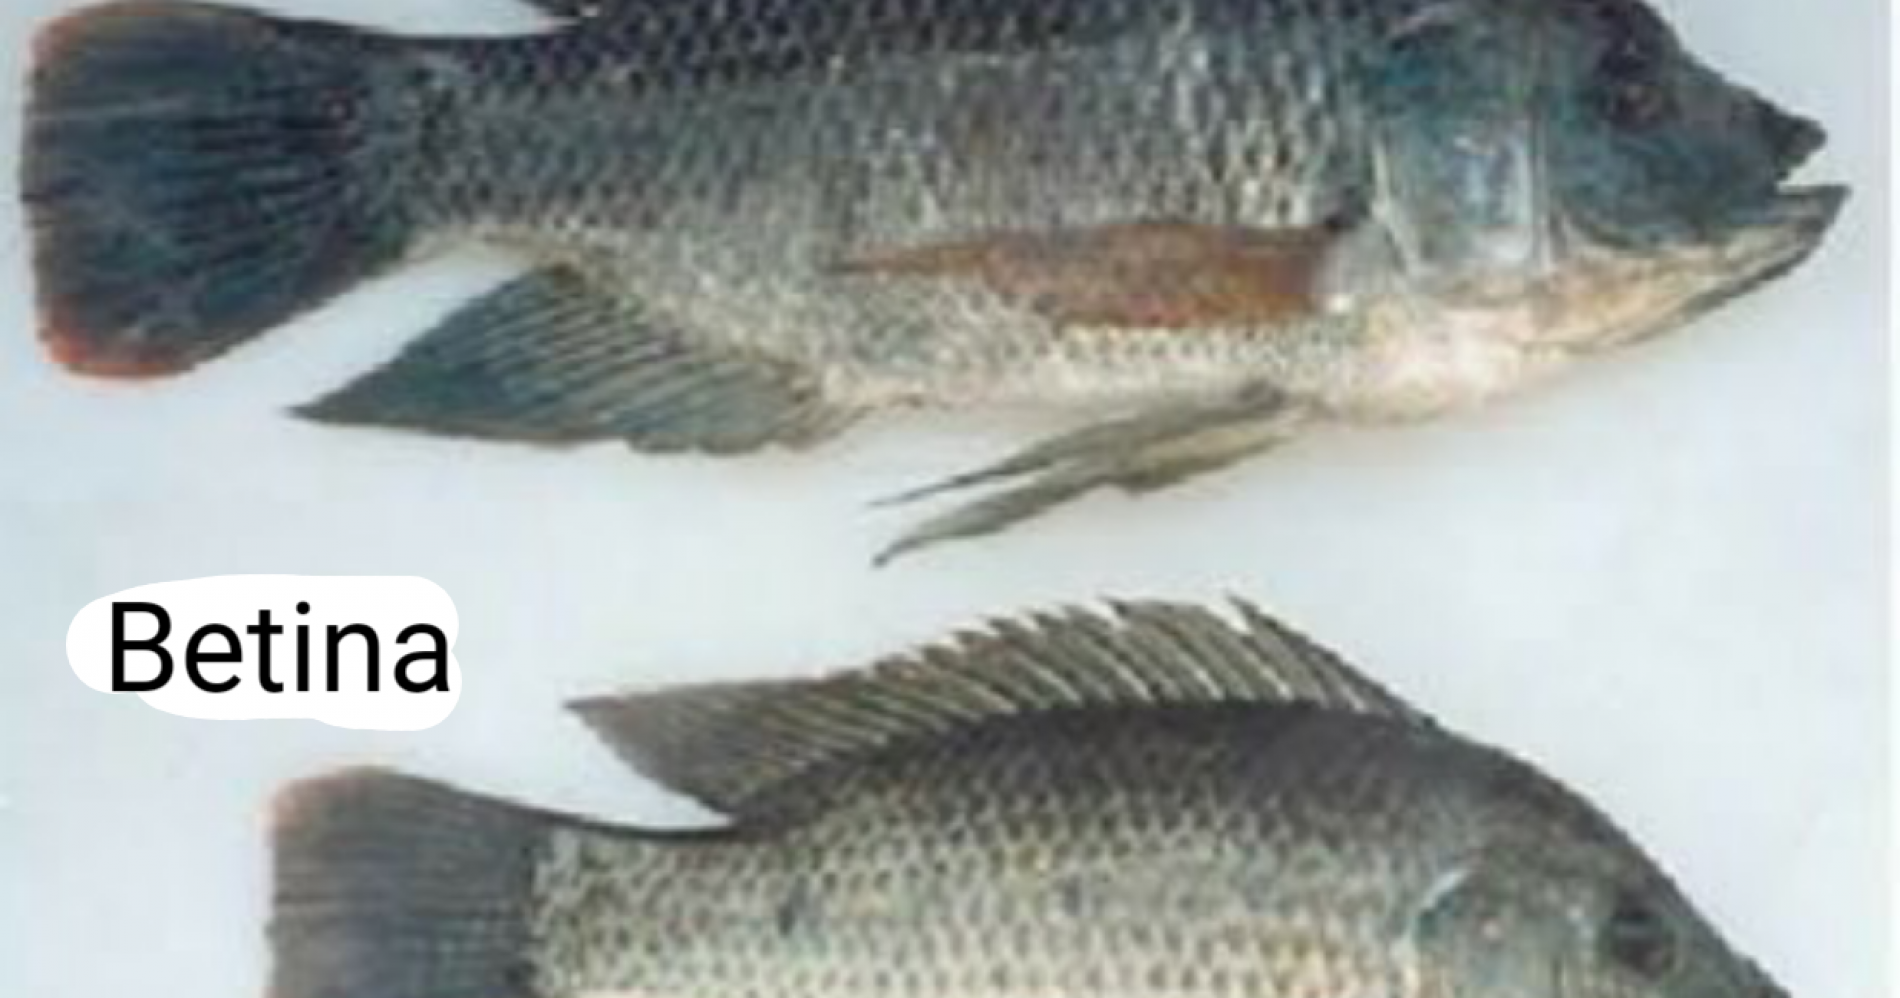 Perbedaan ikan jantan dan ikan betina (Sumber gambar: lab.zleeb.com)